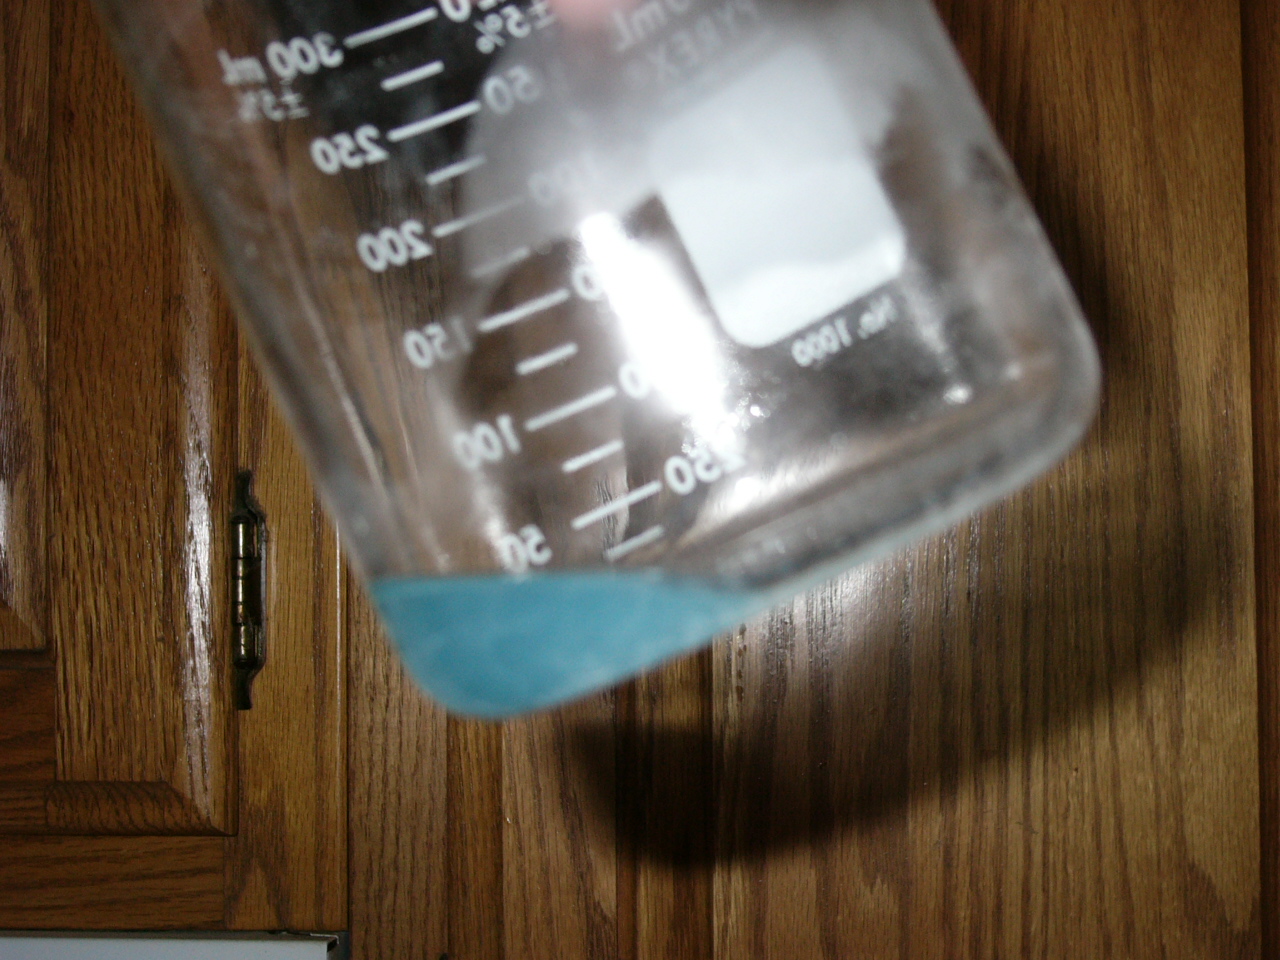 potassium chlorate perchlorate.JPG - 517kB